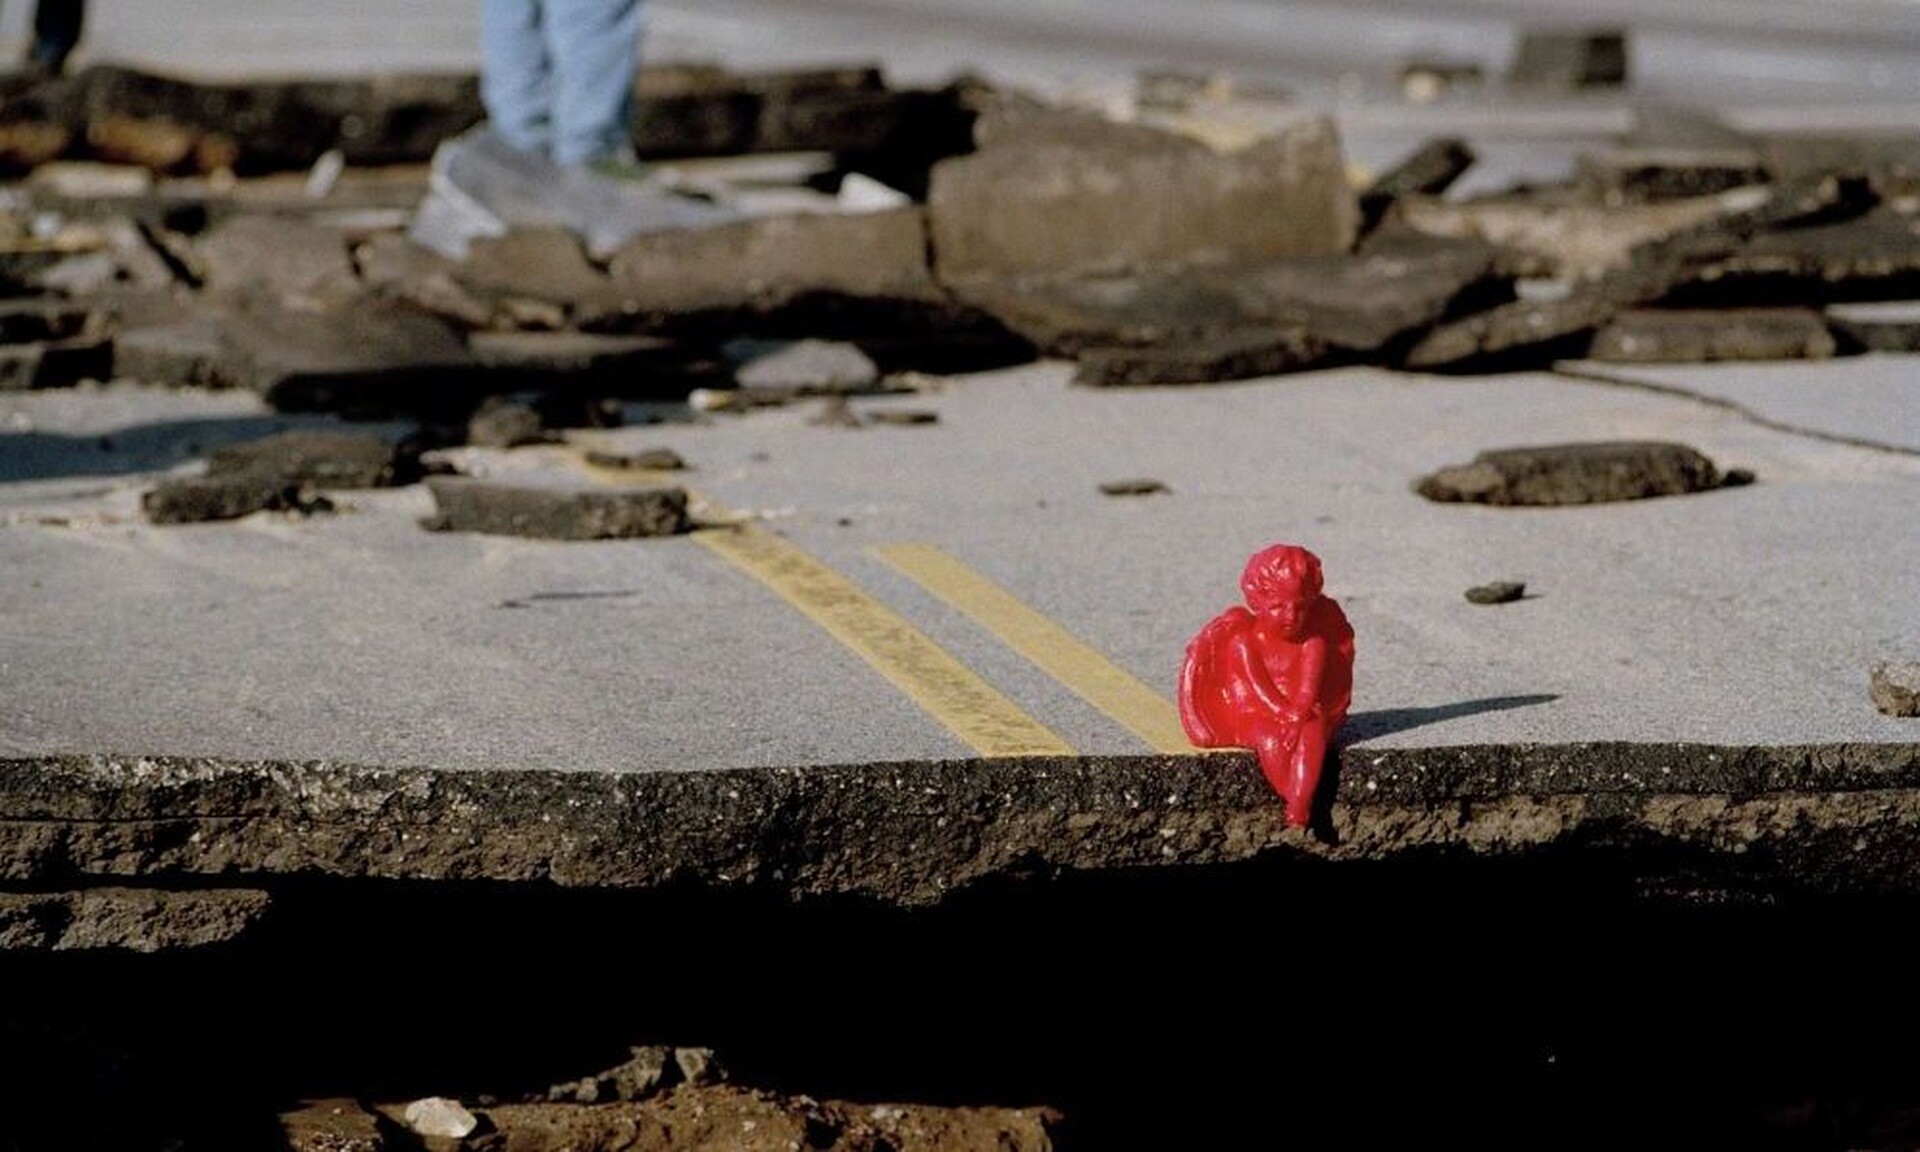 Σεισμός: Ποια Νέα Υόρκη; Το «Δαχτυλίδι της Φωτιάς» απειλεί να... καταπιεί τη Δυτική Ακτή των ΗΠΑ